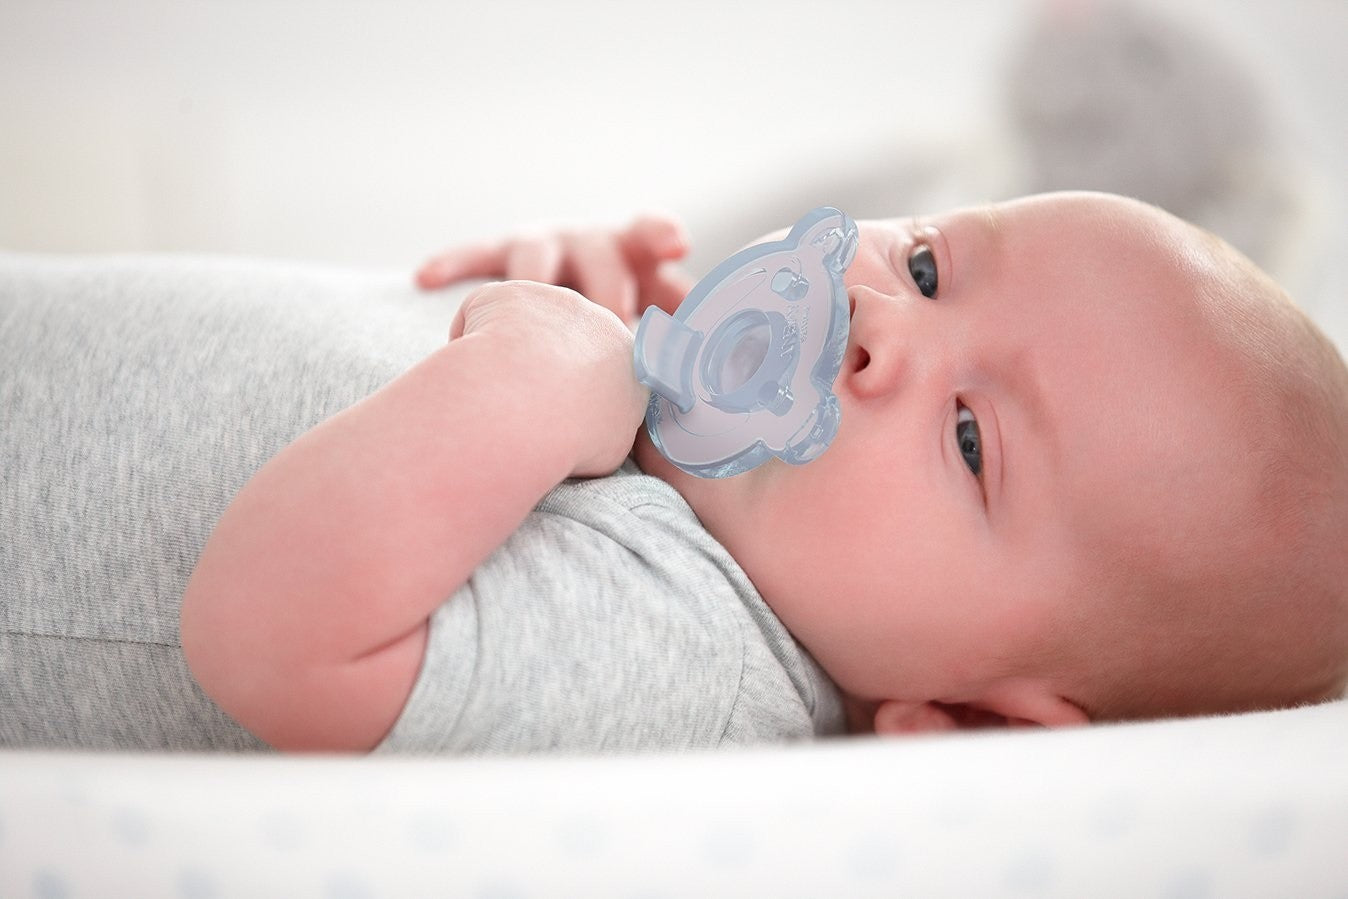 ciuccio per neonato : come e quando utilizzarlo